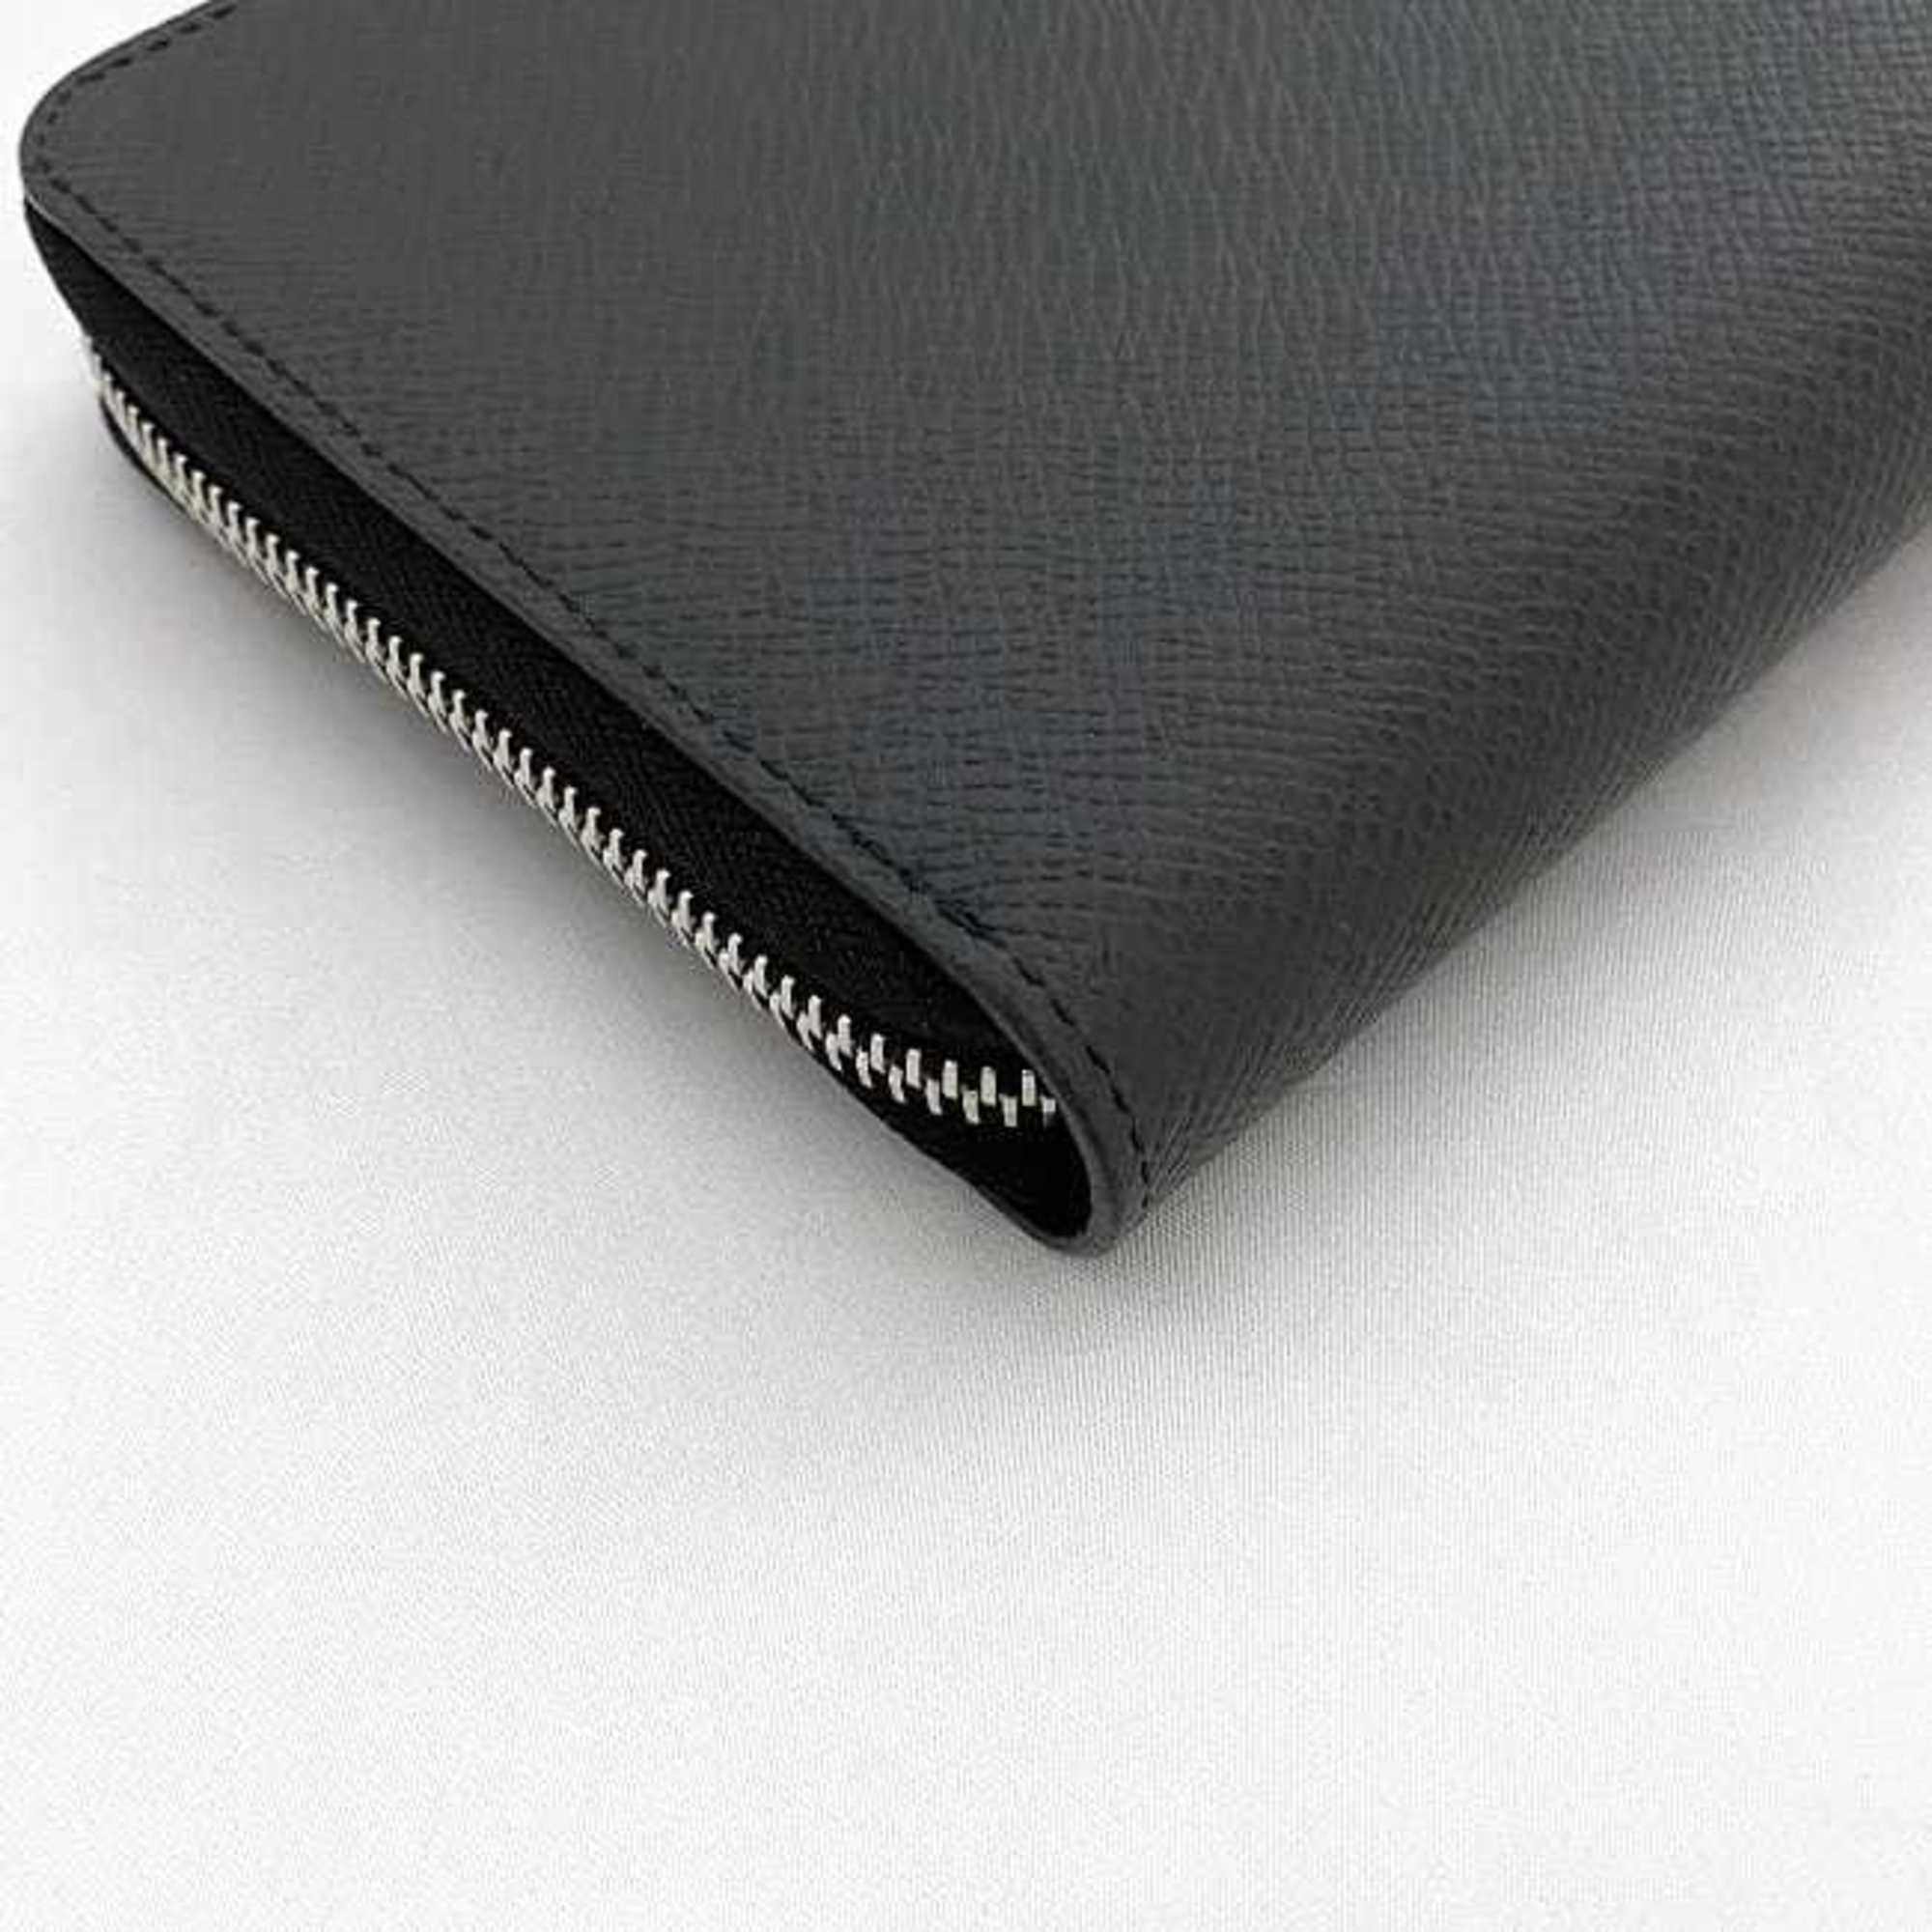 Louis Vuitton Long Wallet Zippy Organizer Black Ardoise M30513 f-20183 Taiga Leather IC Tag Response LOUIS VUITTON Round